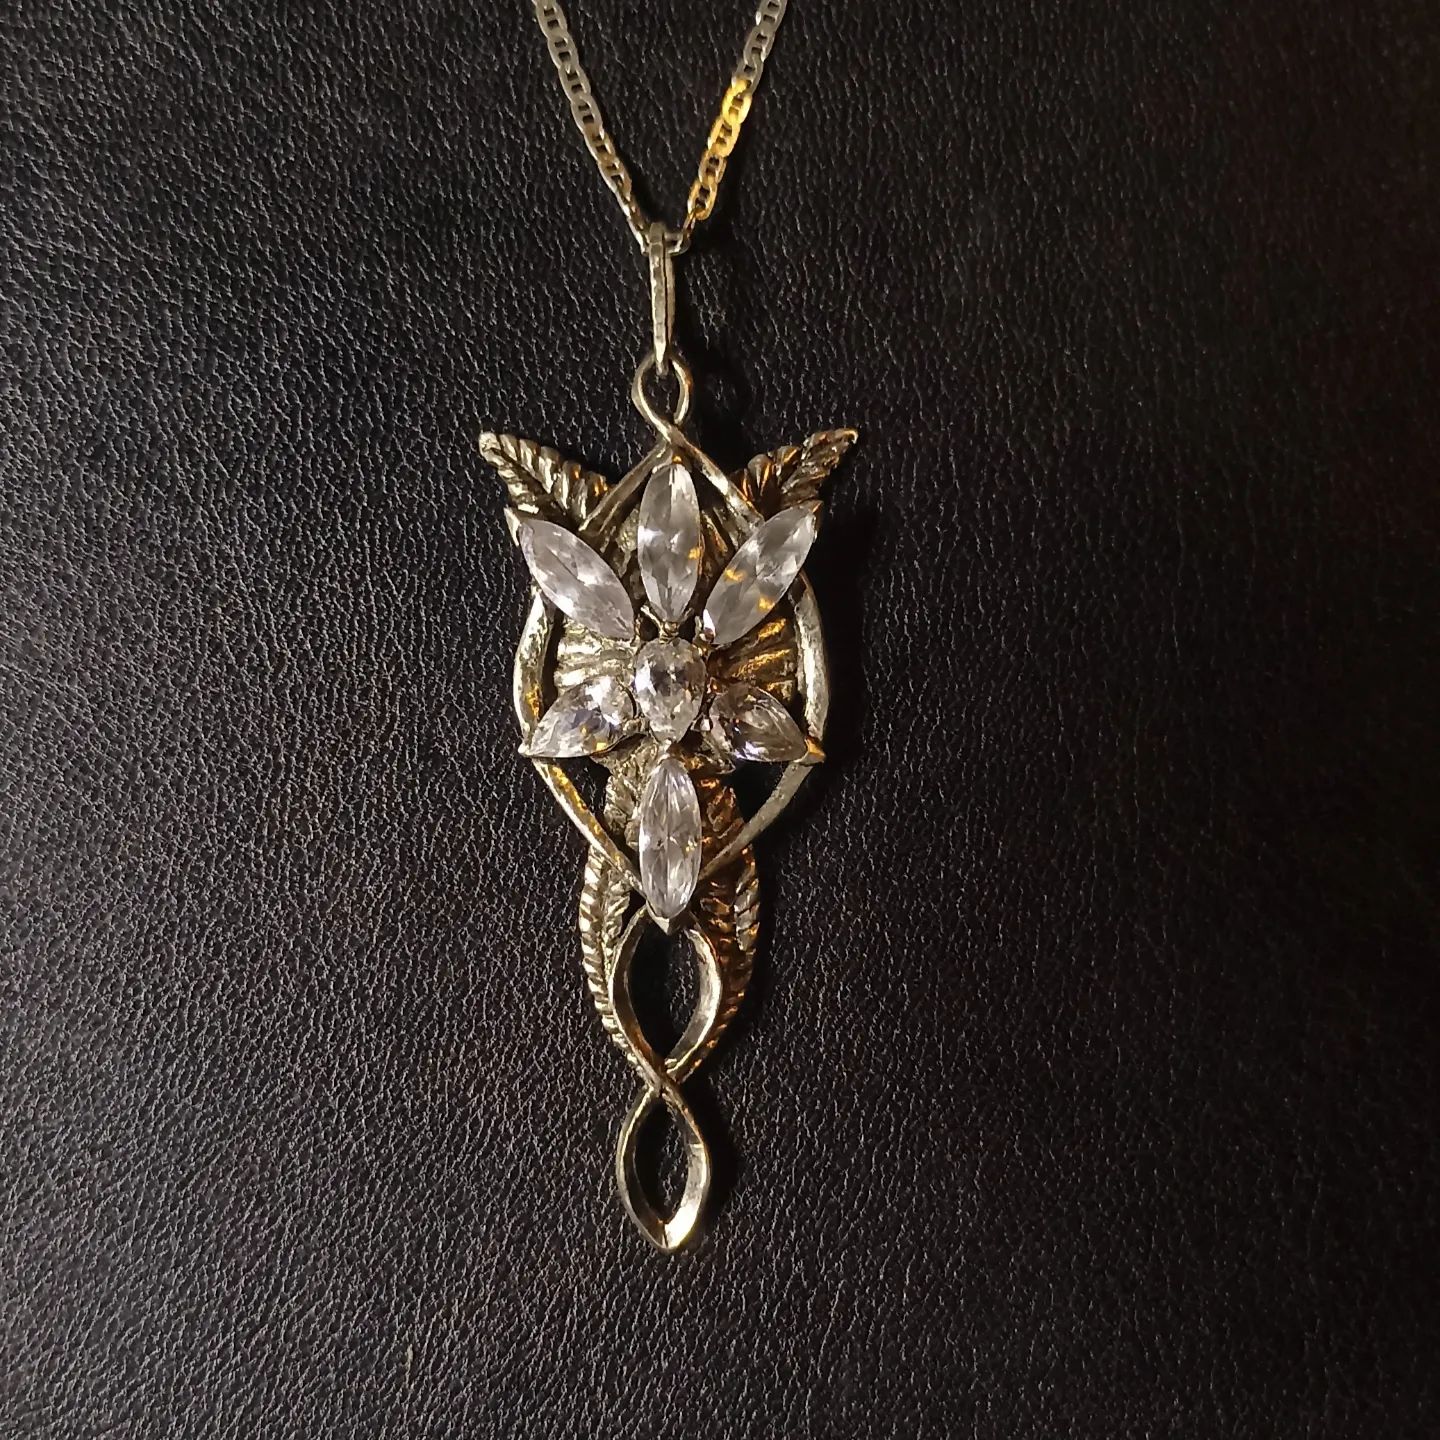 La Estrella del atardecer 

Hermoso collar inspirado en la saga de peliculas del señor de los anillos. 

Forjado a mano 